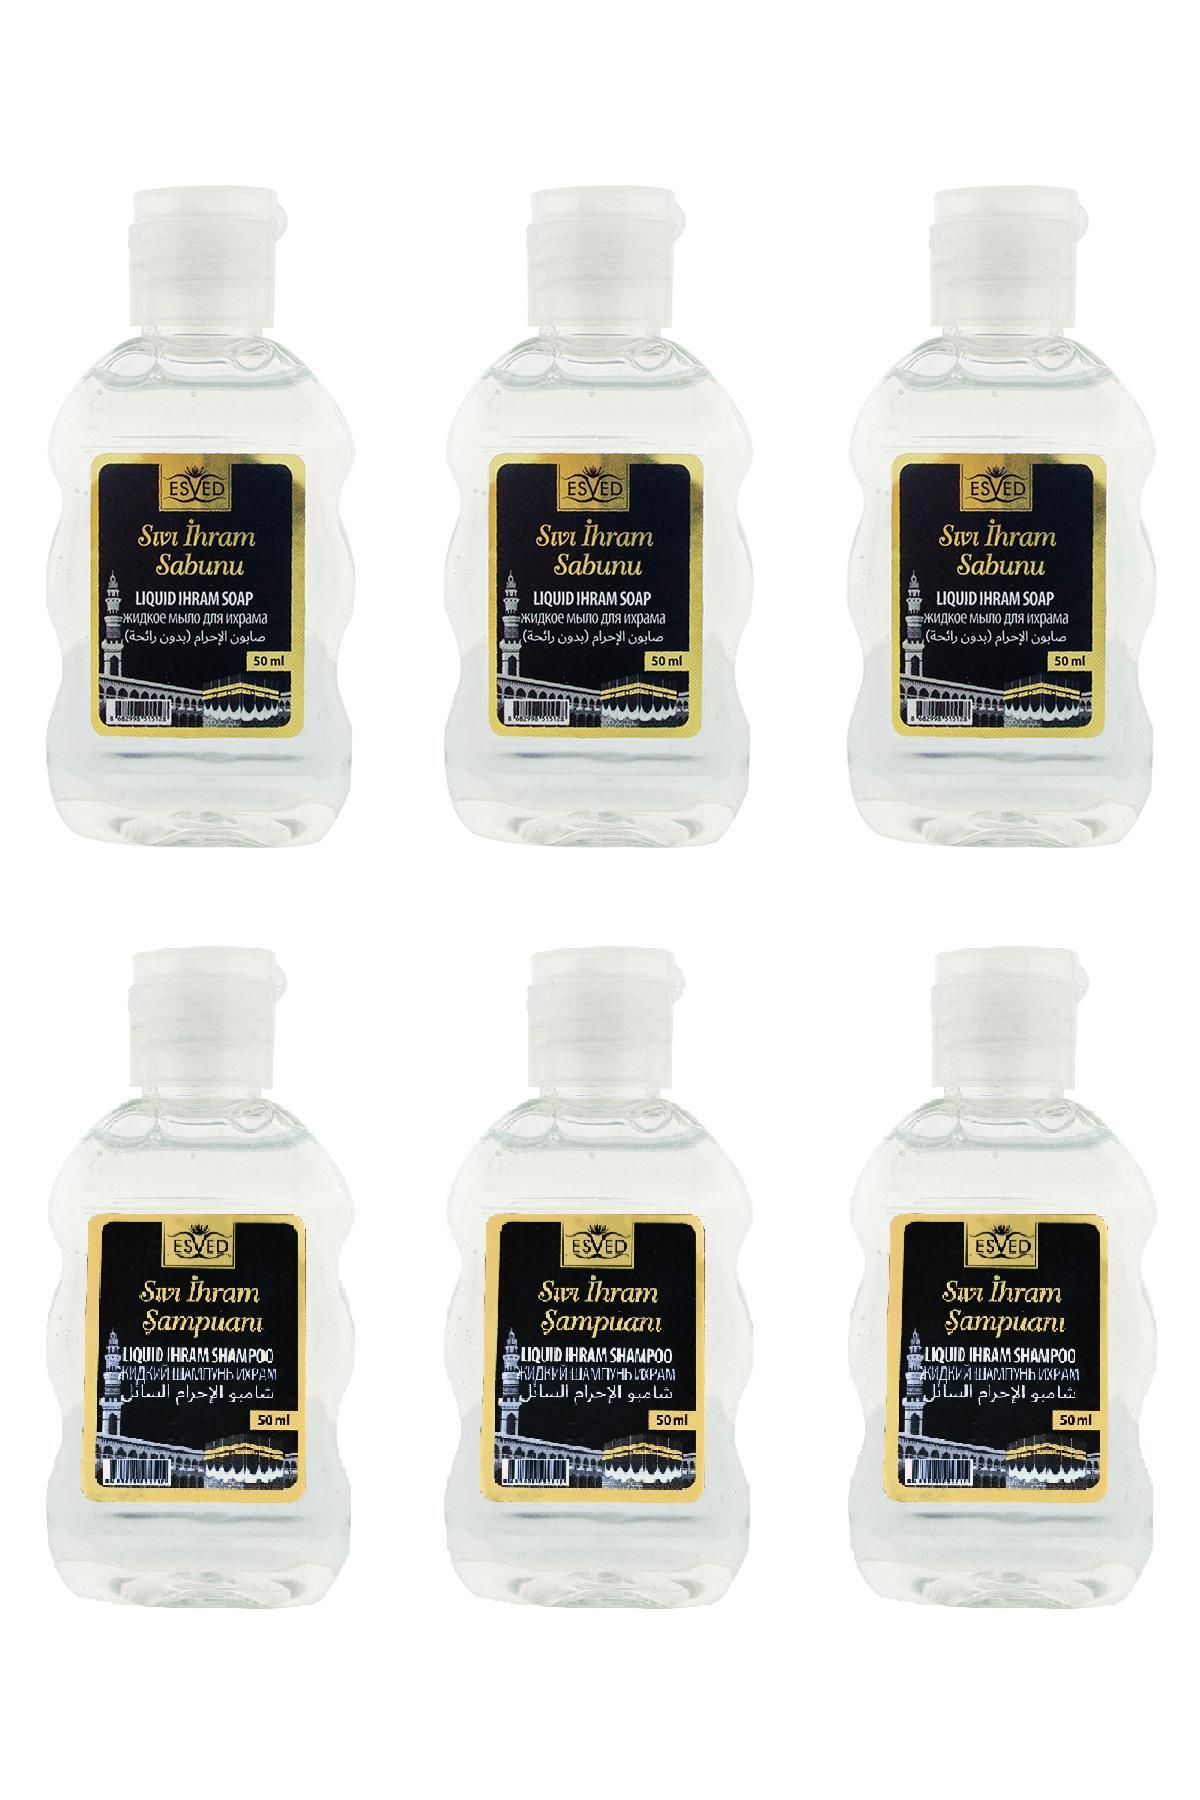 ESVED Kokusuz Sıvı İhram Sabunu Ve Kokusuz Sıvı İhram Şampuanı 50Ml 6 Adet